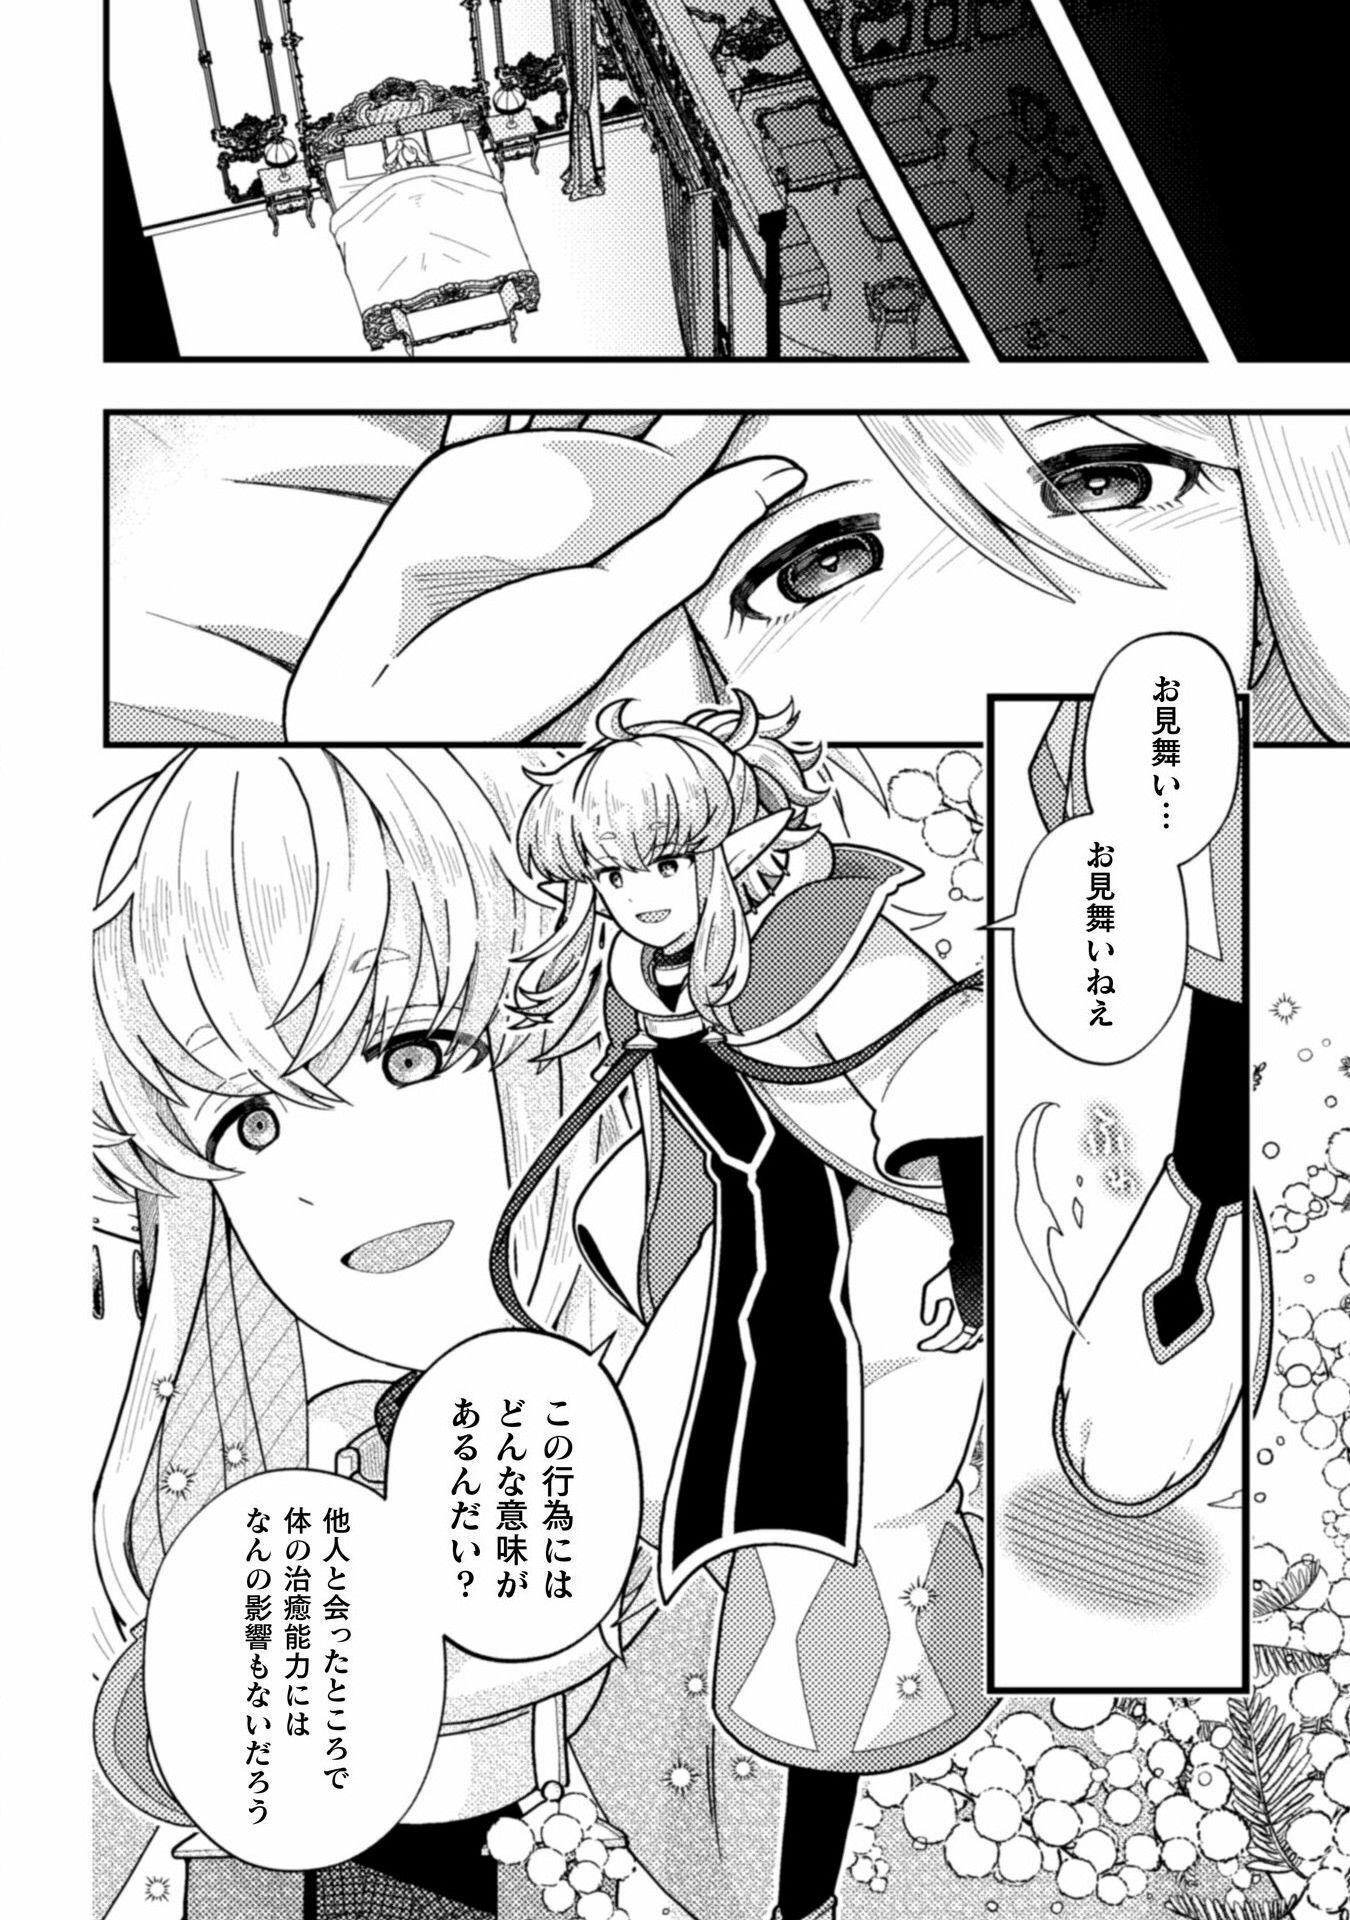 Otome Game no Akuyaku Reijou ni Tensei shitakedo Follower ga Fukyoushiteta Chisiki shikanai - Chapter 20 - Page 18